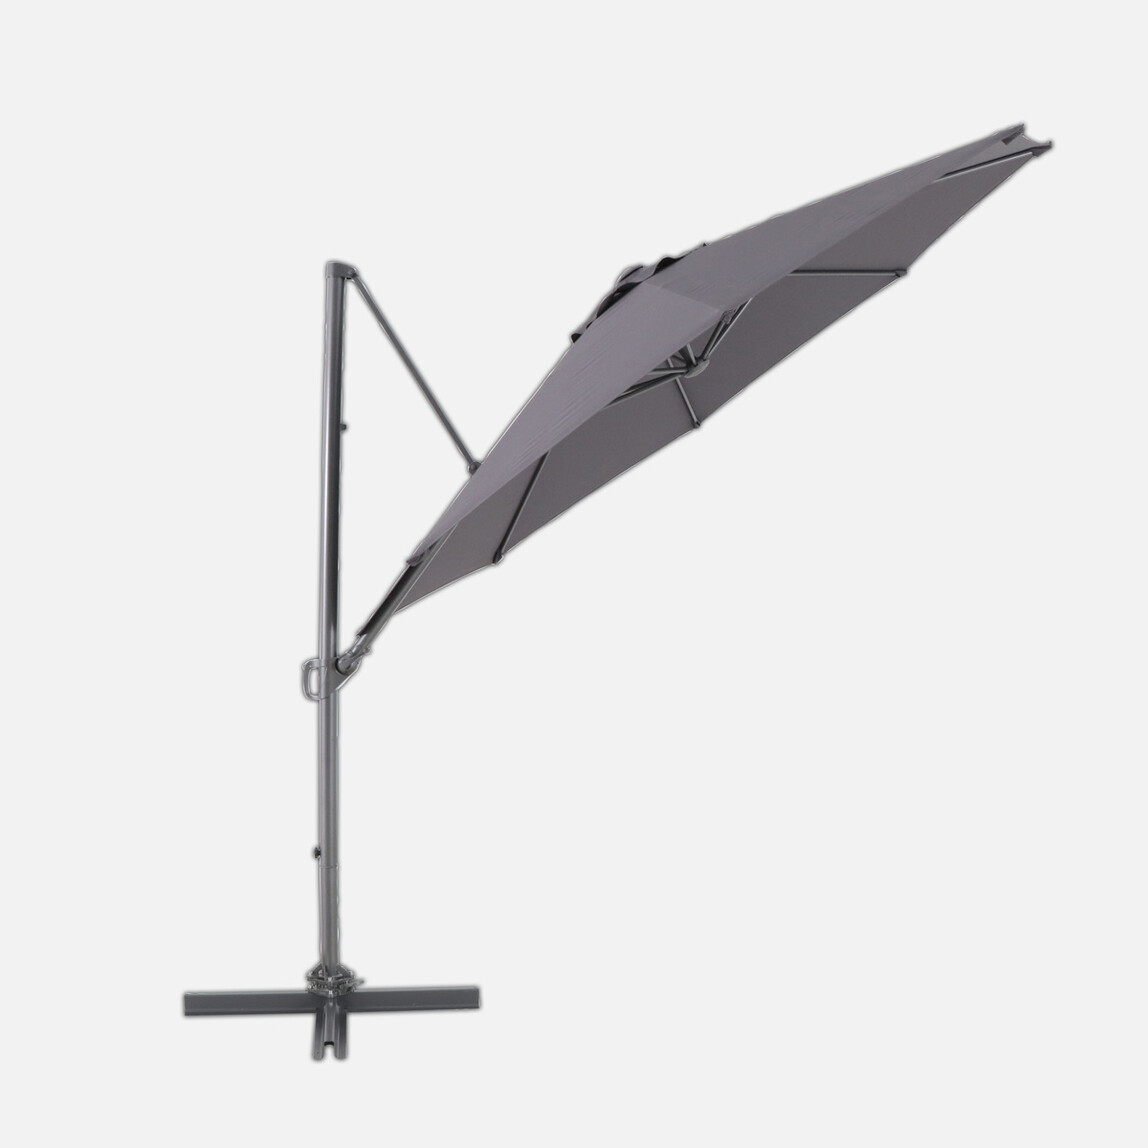    Sunfun Şemsiye Koyu Gri 300 cm
 